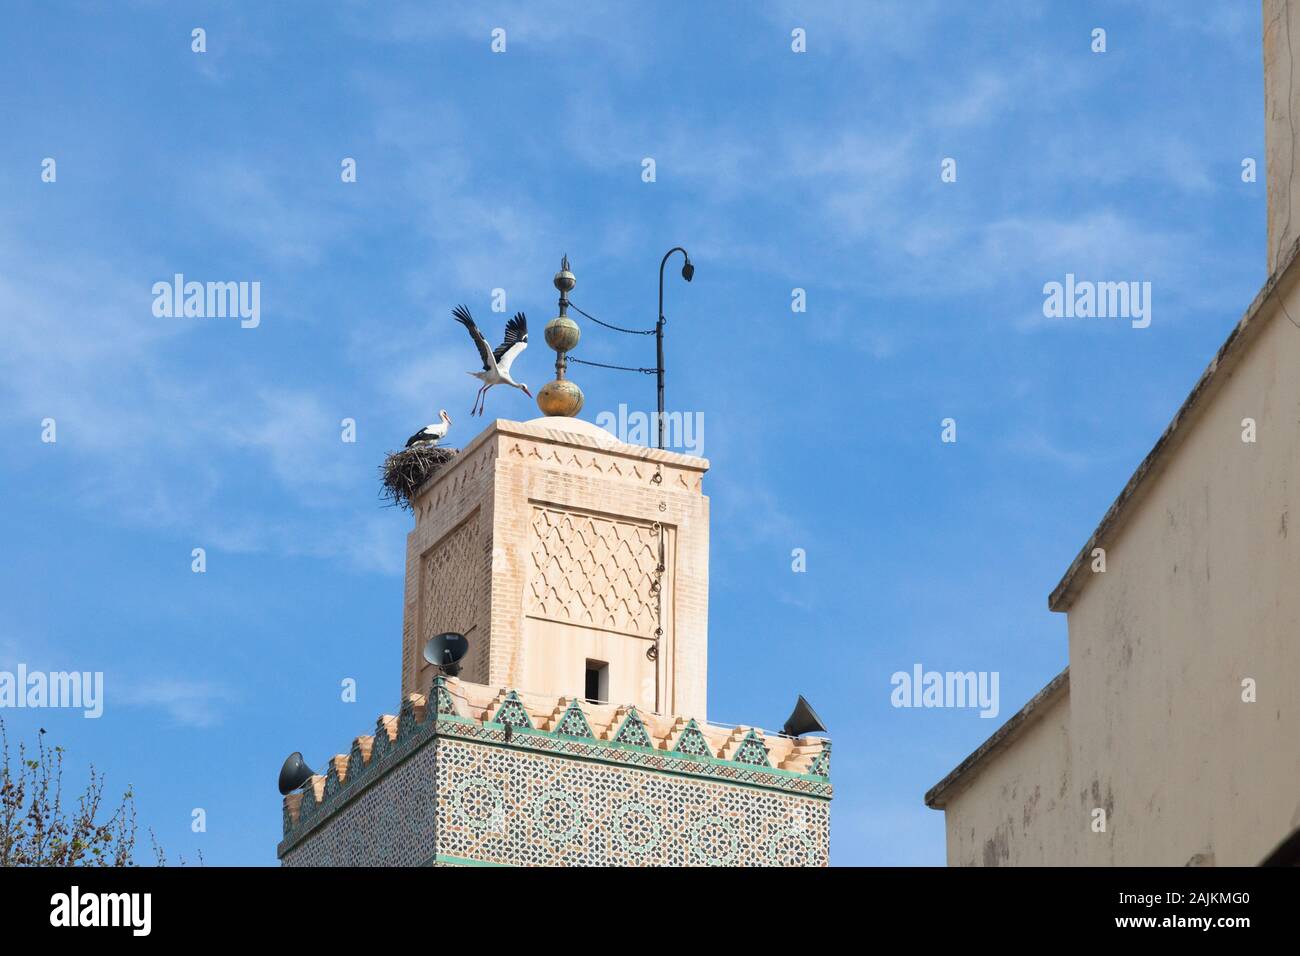 Dos cigüeñas blancas (Ciconia ciconia) - uno volando y uno en el nido en la parte superior del minarete de la Mezquita Al-Hamra (o Mezquita Roja) en Fes, Marruecos (fez) Foto de stock